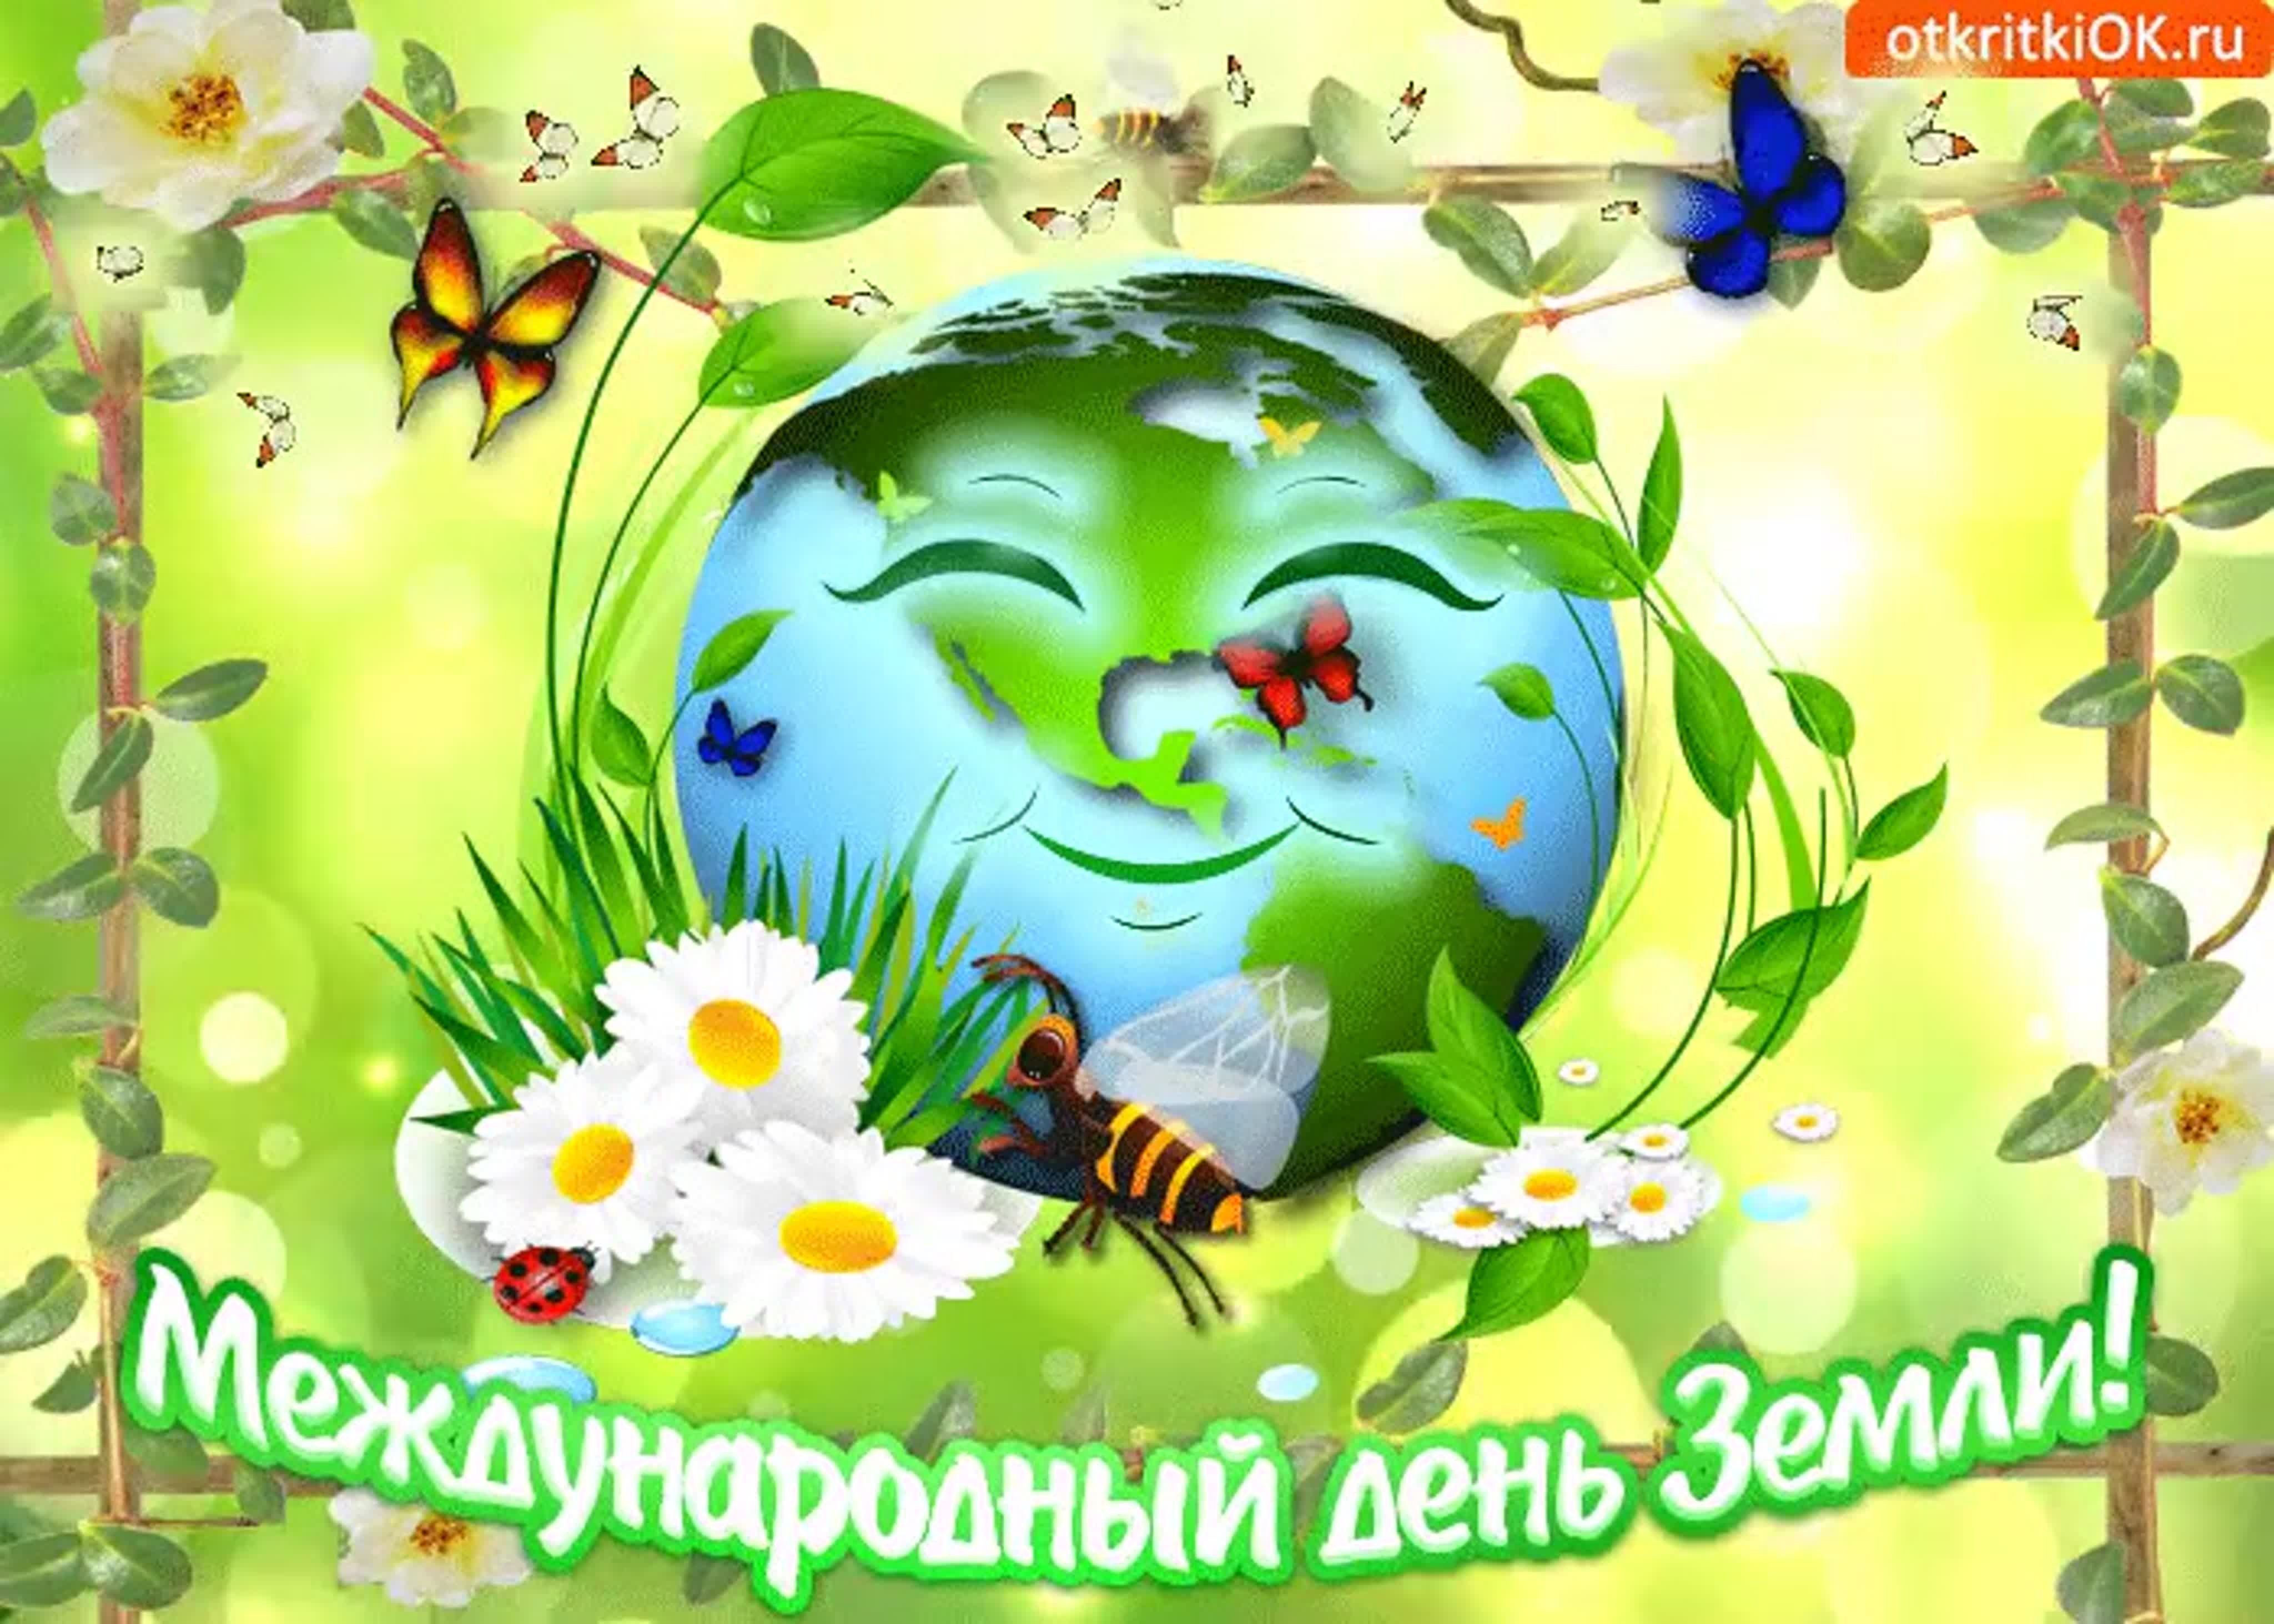 22 апреля что за праздник. День земли. С днем земли поздравления. Всемирный день земли. 22 Апреля день земли.